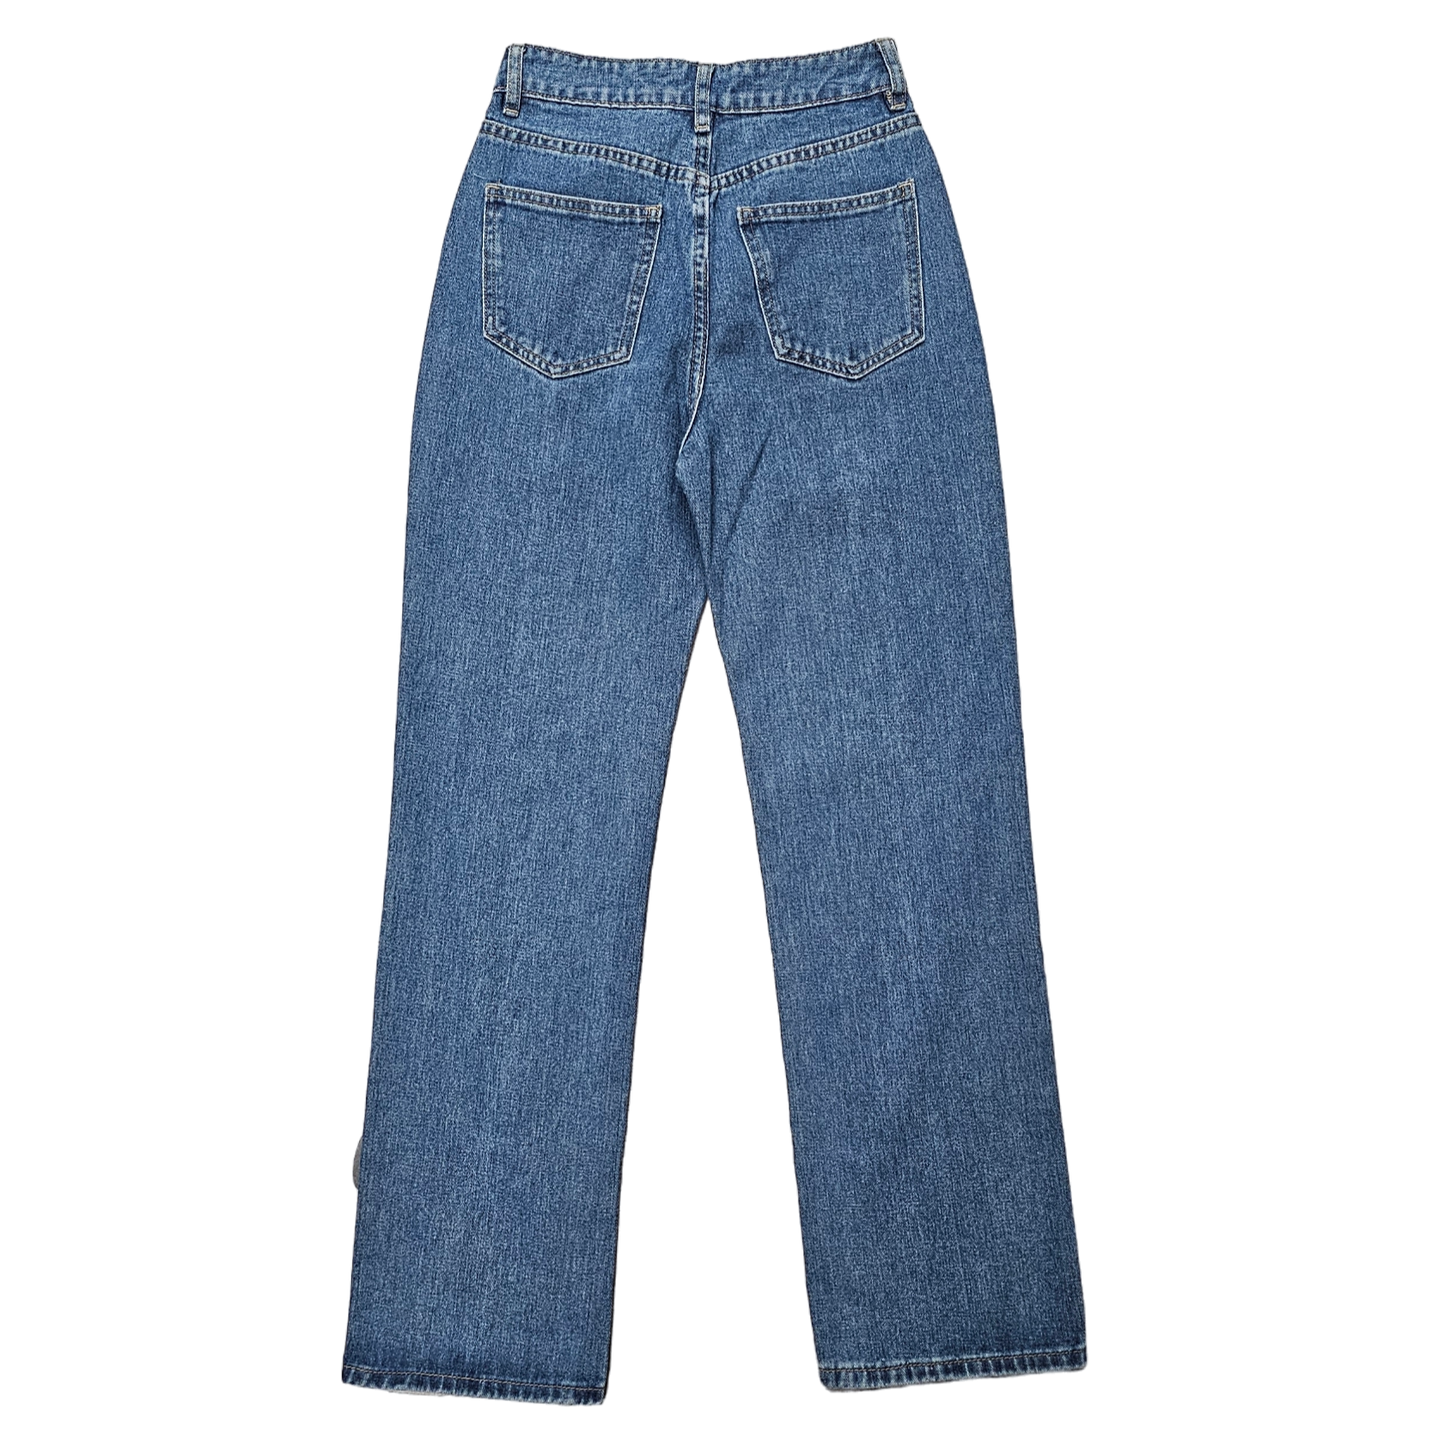 Jeans Straight By adika Size: Xs